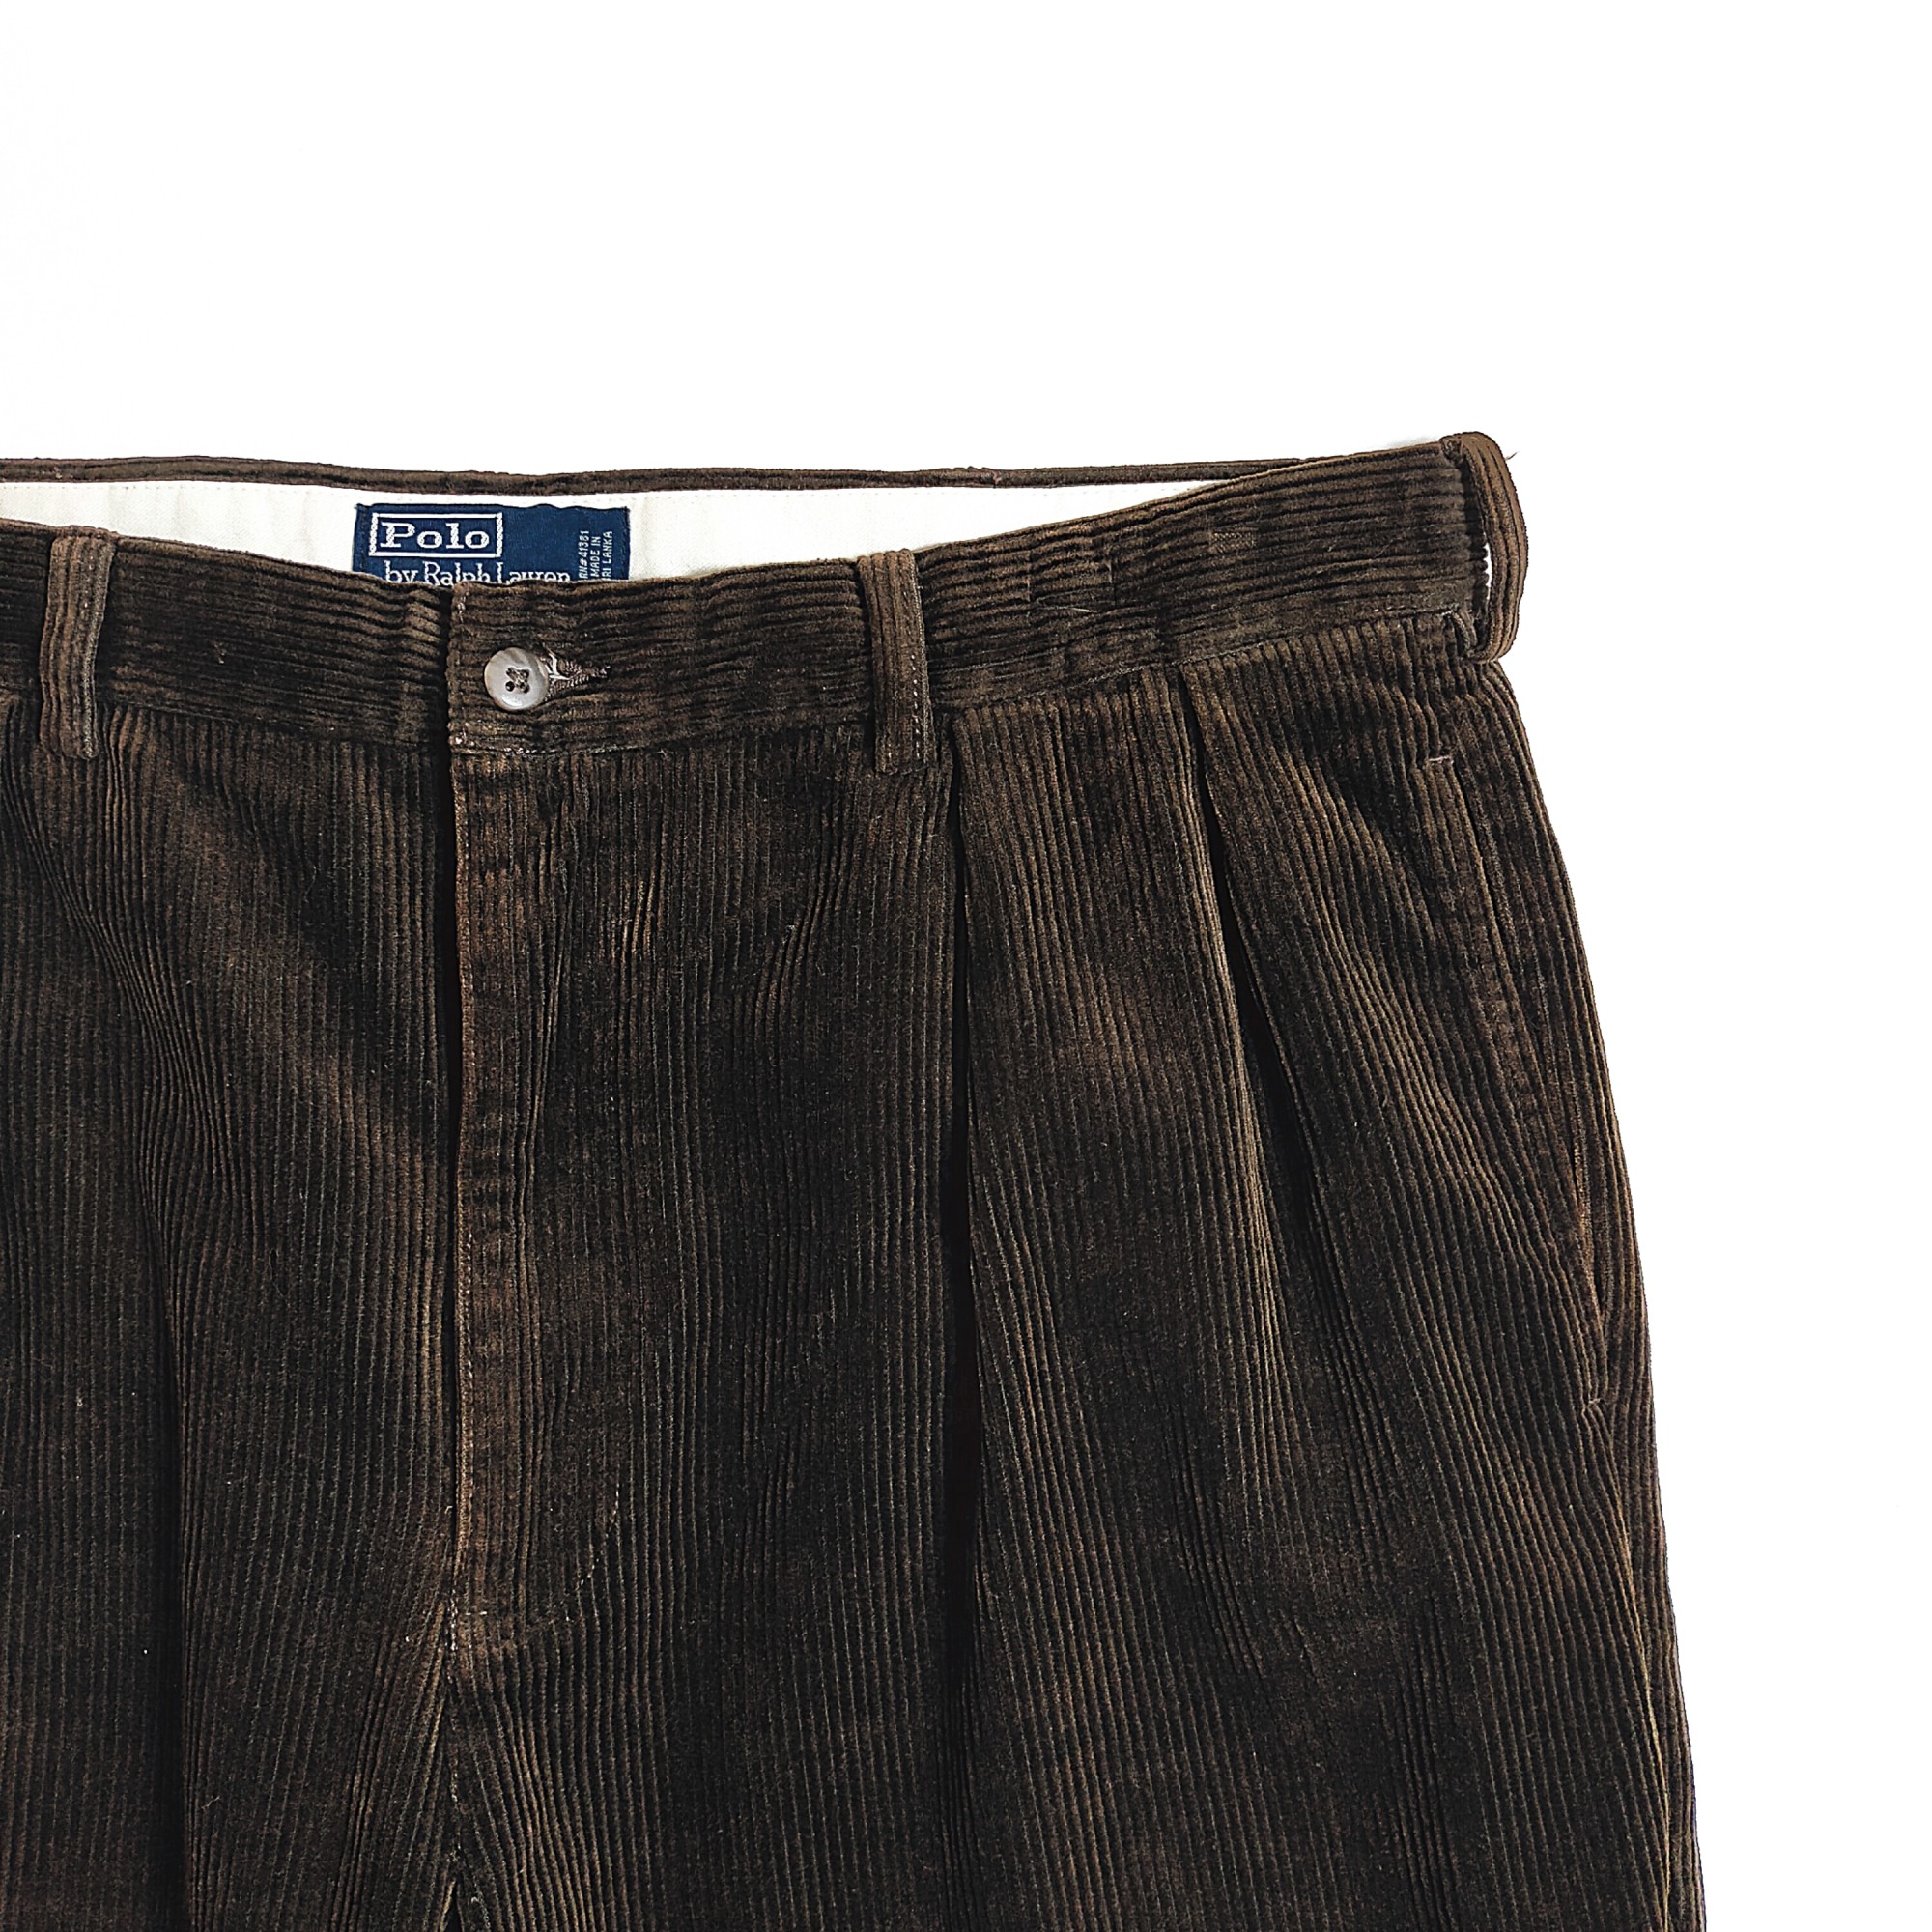 Ralph Lauren / Corduroy slacks pants W36